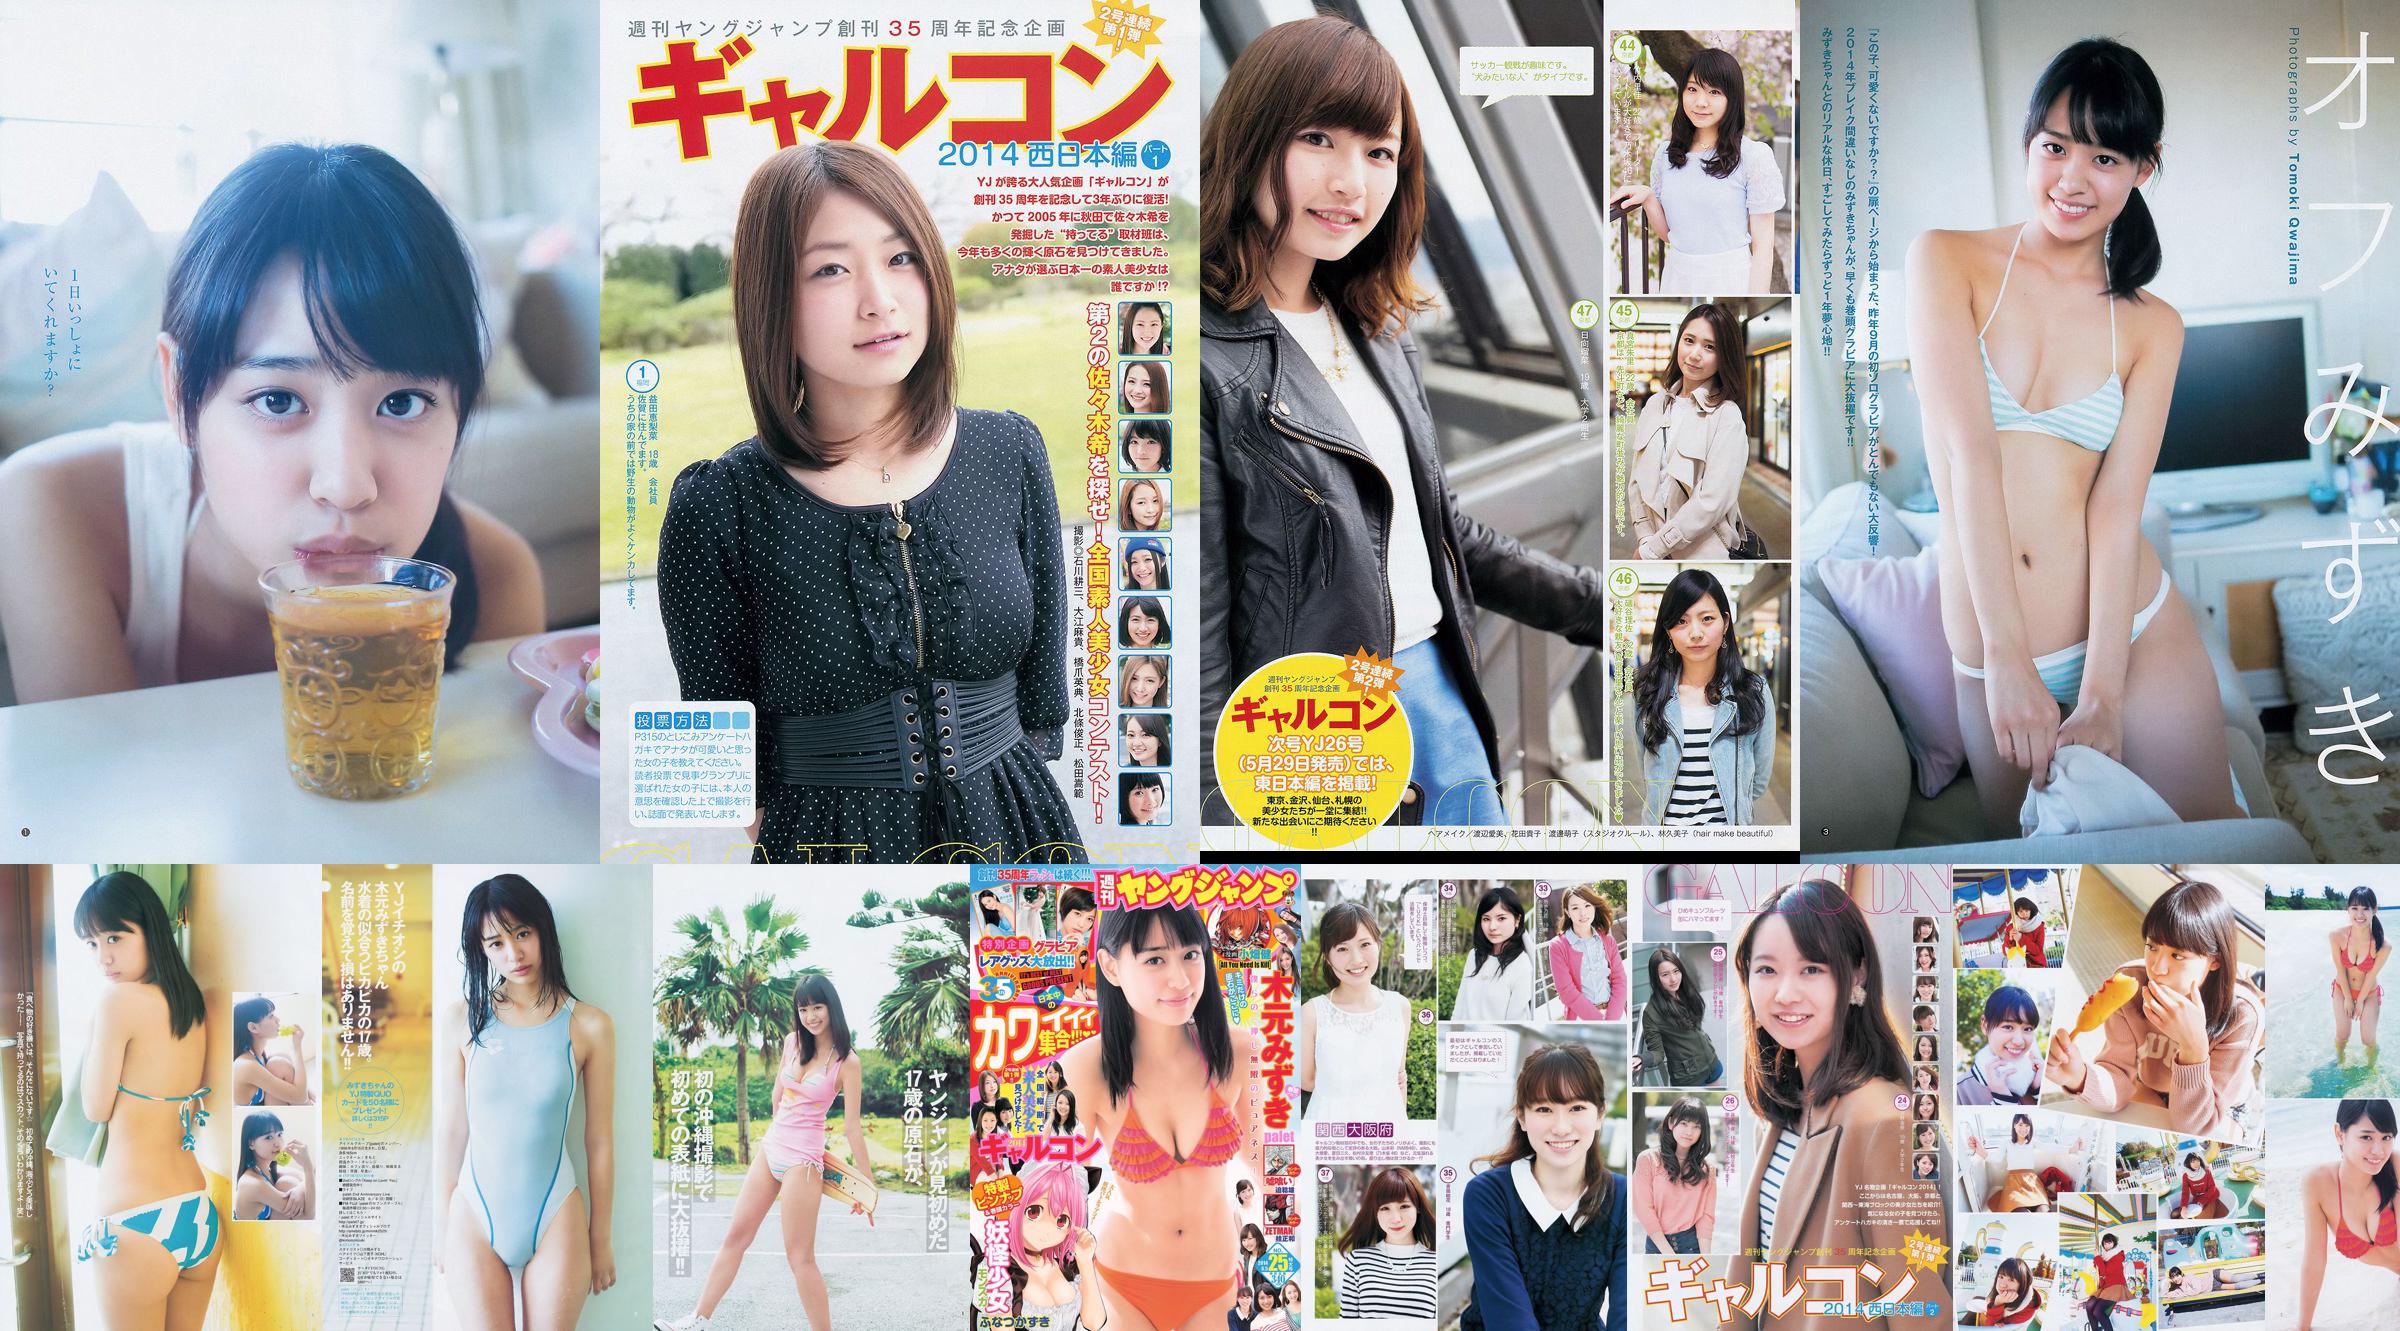 木元みずき ギャルコン2014 [Weekly Young Jump] 2014年No.25 写真杂志 No.6452a4 第8页